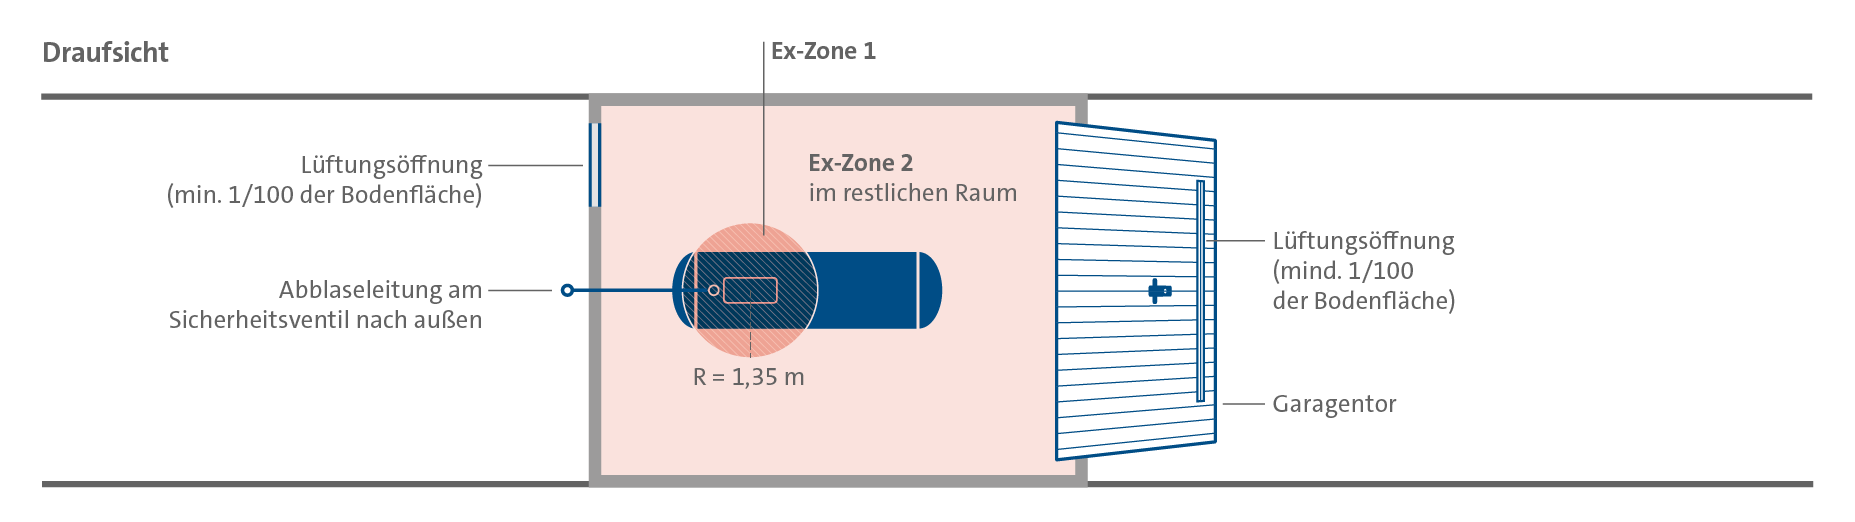 Darstellung der Ex-Zonen eines Flüssiggastanks in einem geschlossenen Raum (Draufsicht).